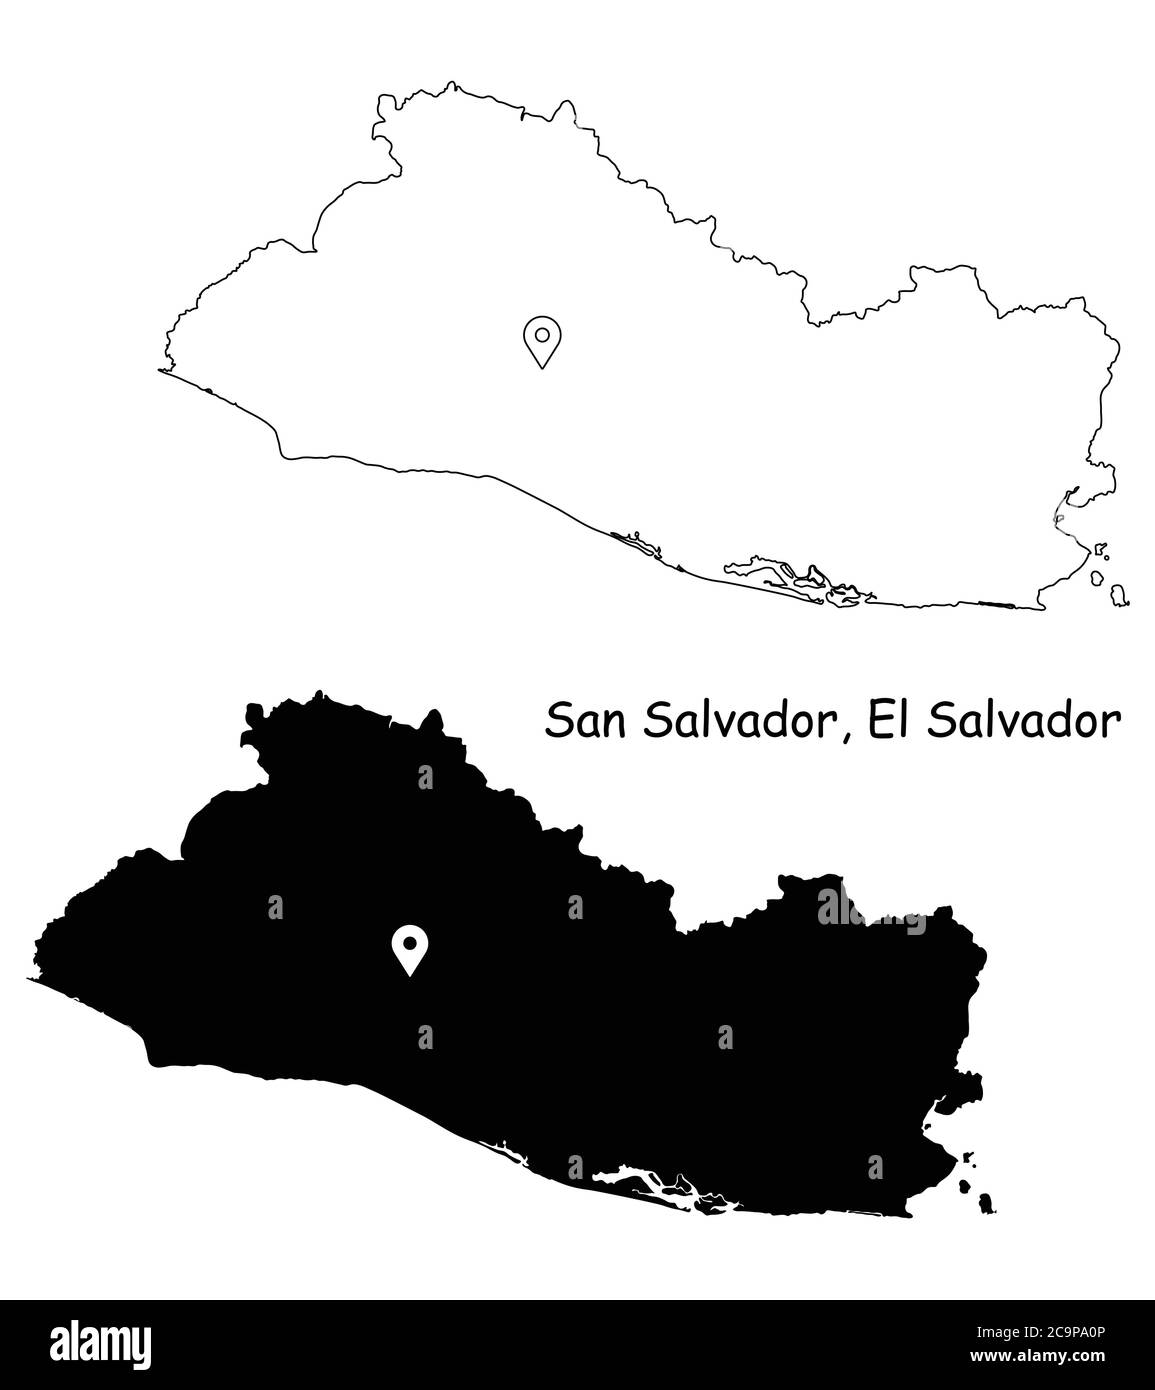 San Salvador El Salvador. Mappa dettagliata del Paese con il pin della posizione sulla città capitale. Silhouette nera e mappe di contorno isolate su sfondo bianco. EPS Illustrazione Vettoriale